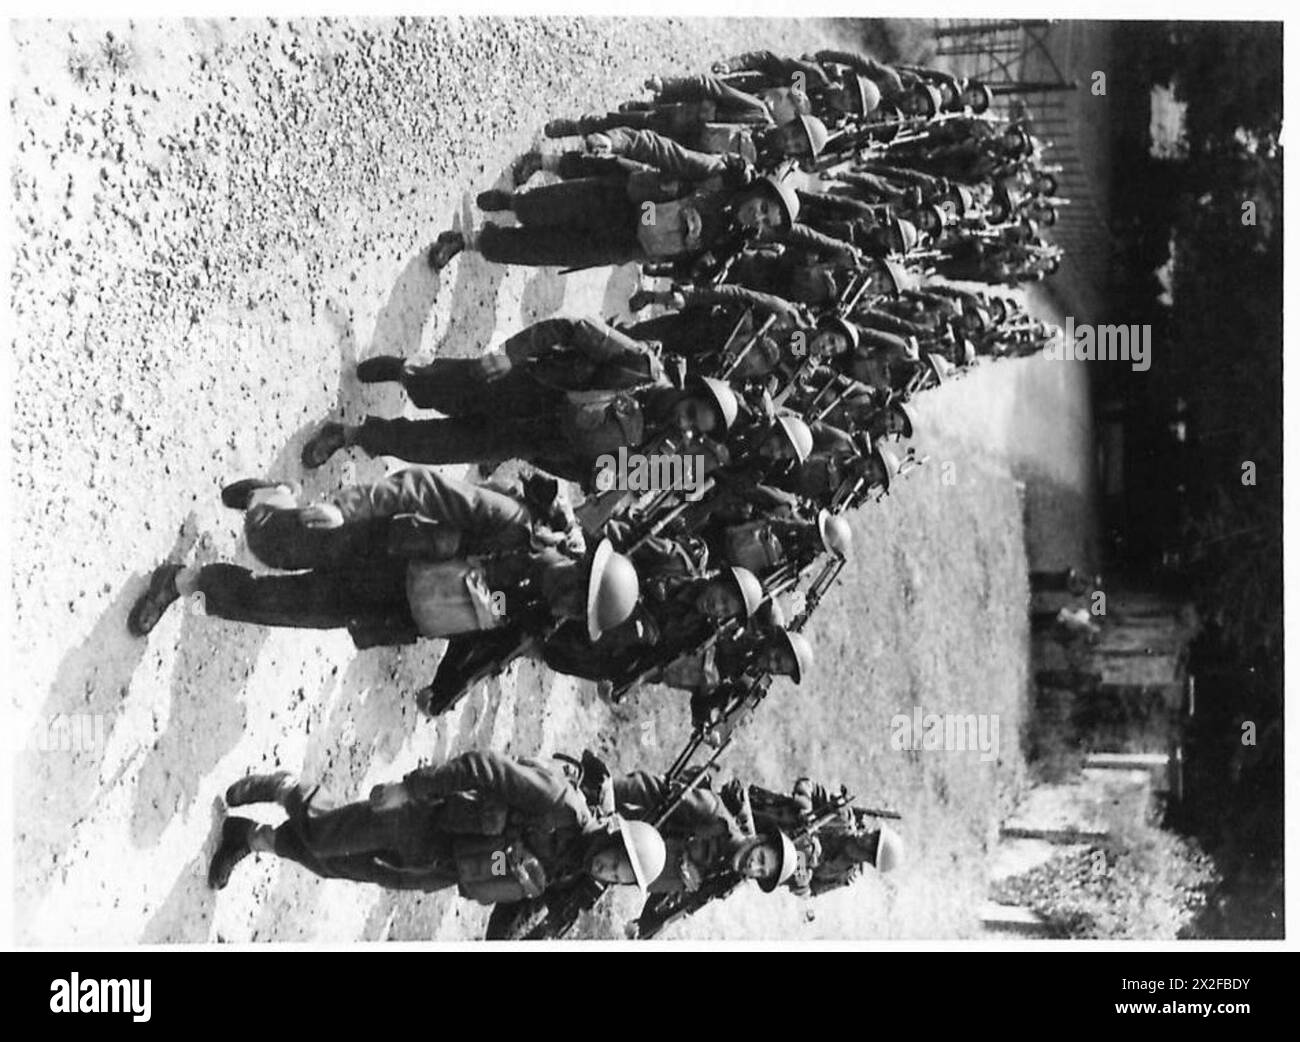 ROYAL SCOTS FUSILIERS CON EQUIPAGGIAMENTO MODERNO - membri della R.E.F. che marciano con i loro cannoni Bren per l'addestramento mattutino dell'esercito britannico Foto Stock